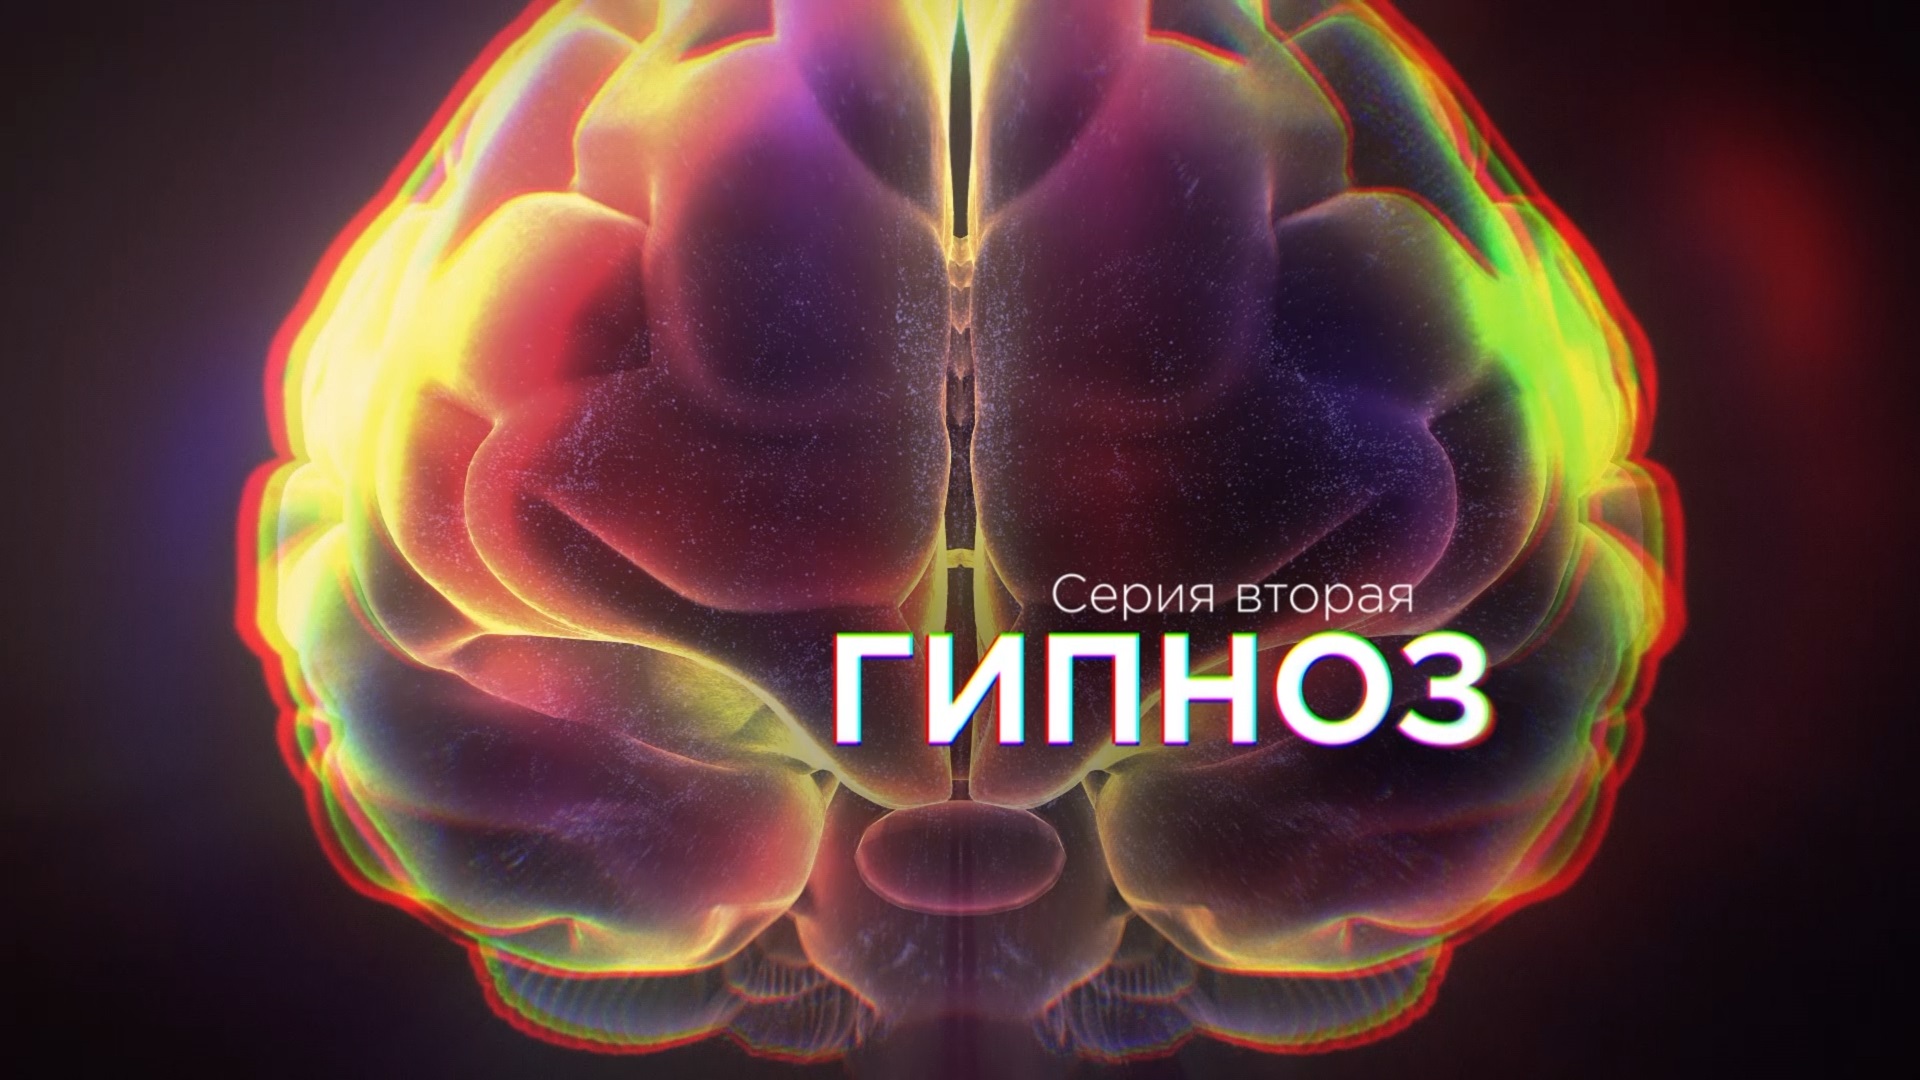 Сериал "Мозг. Вторая Вселенная". Серия 2 - Гипноз